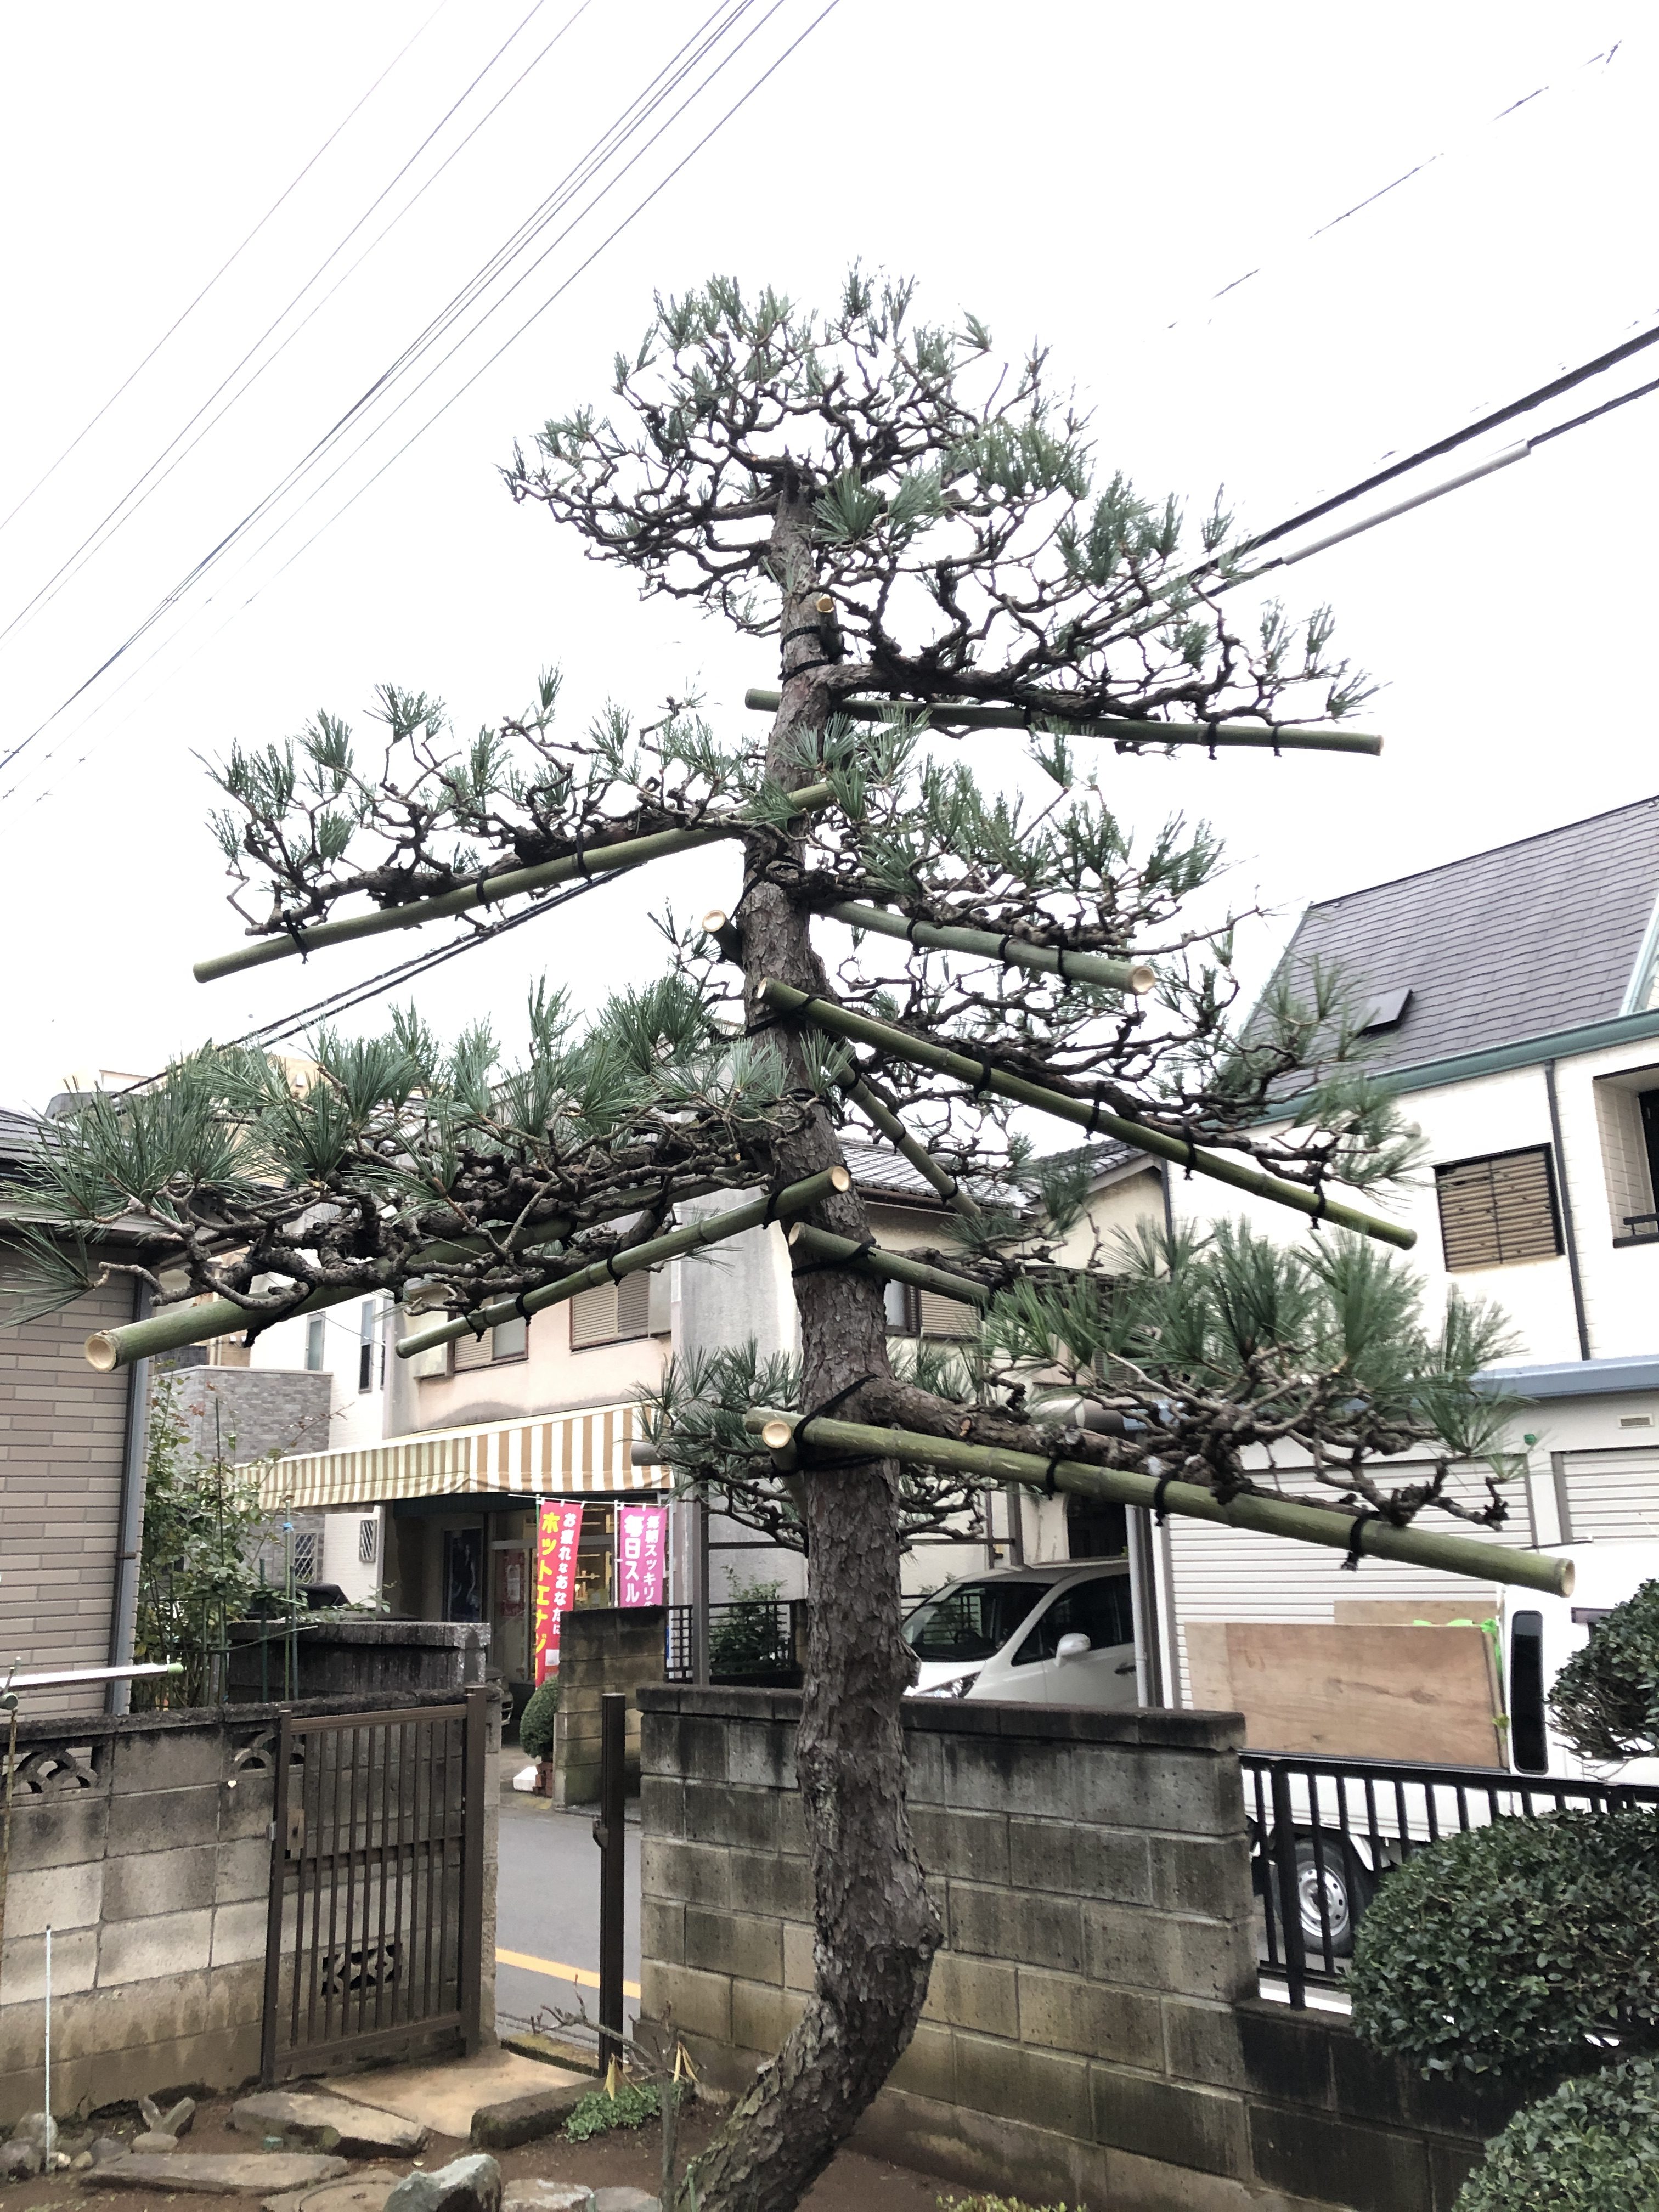 金子造園 高木 4m以上 松の剪定のご依頼 埼玉県さいたま市大宮区のy様のお庭 金子造園